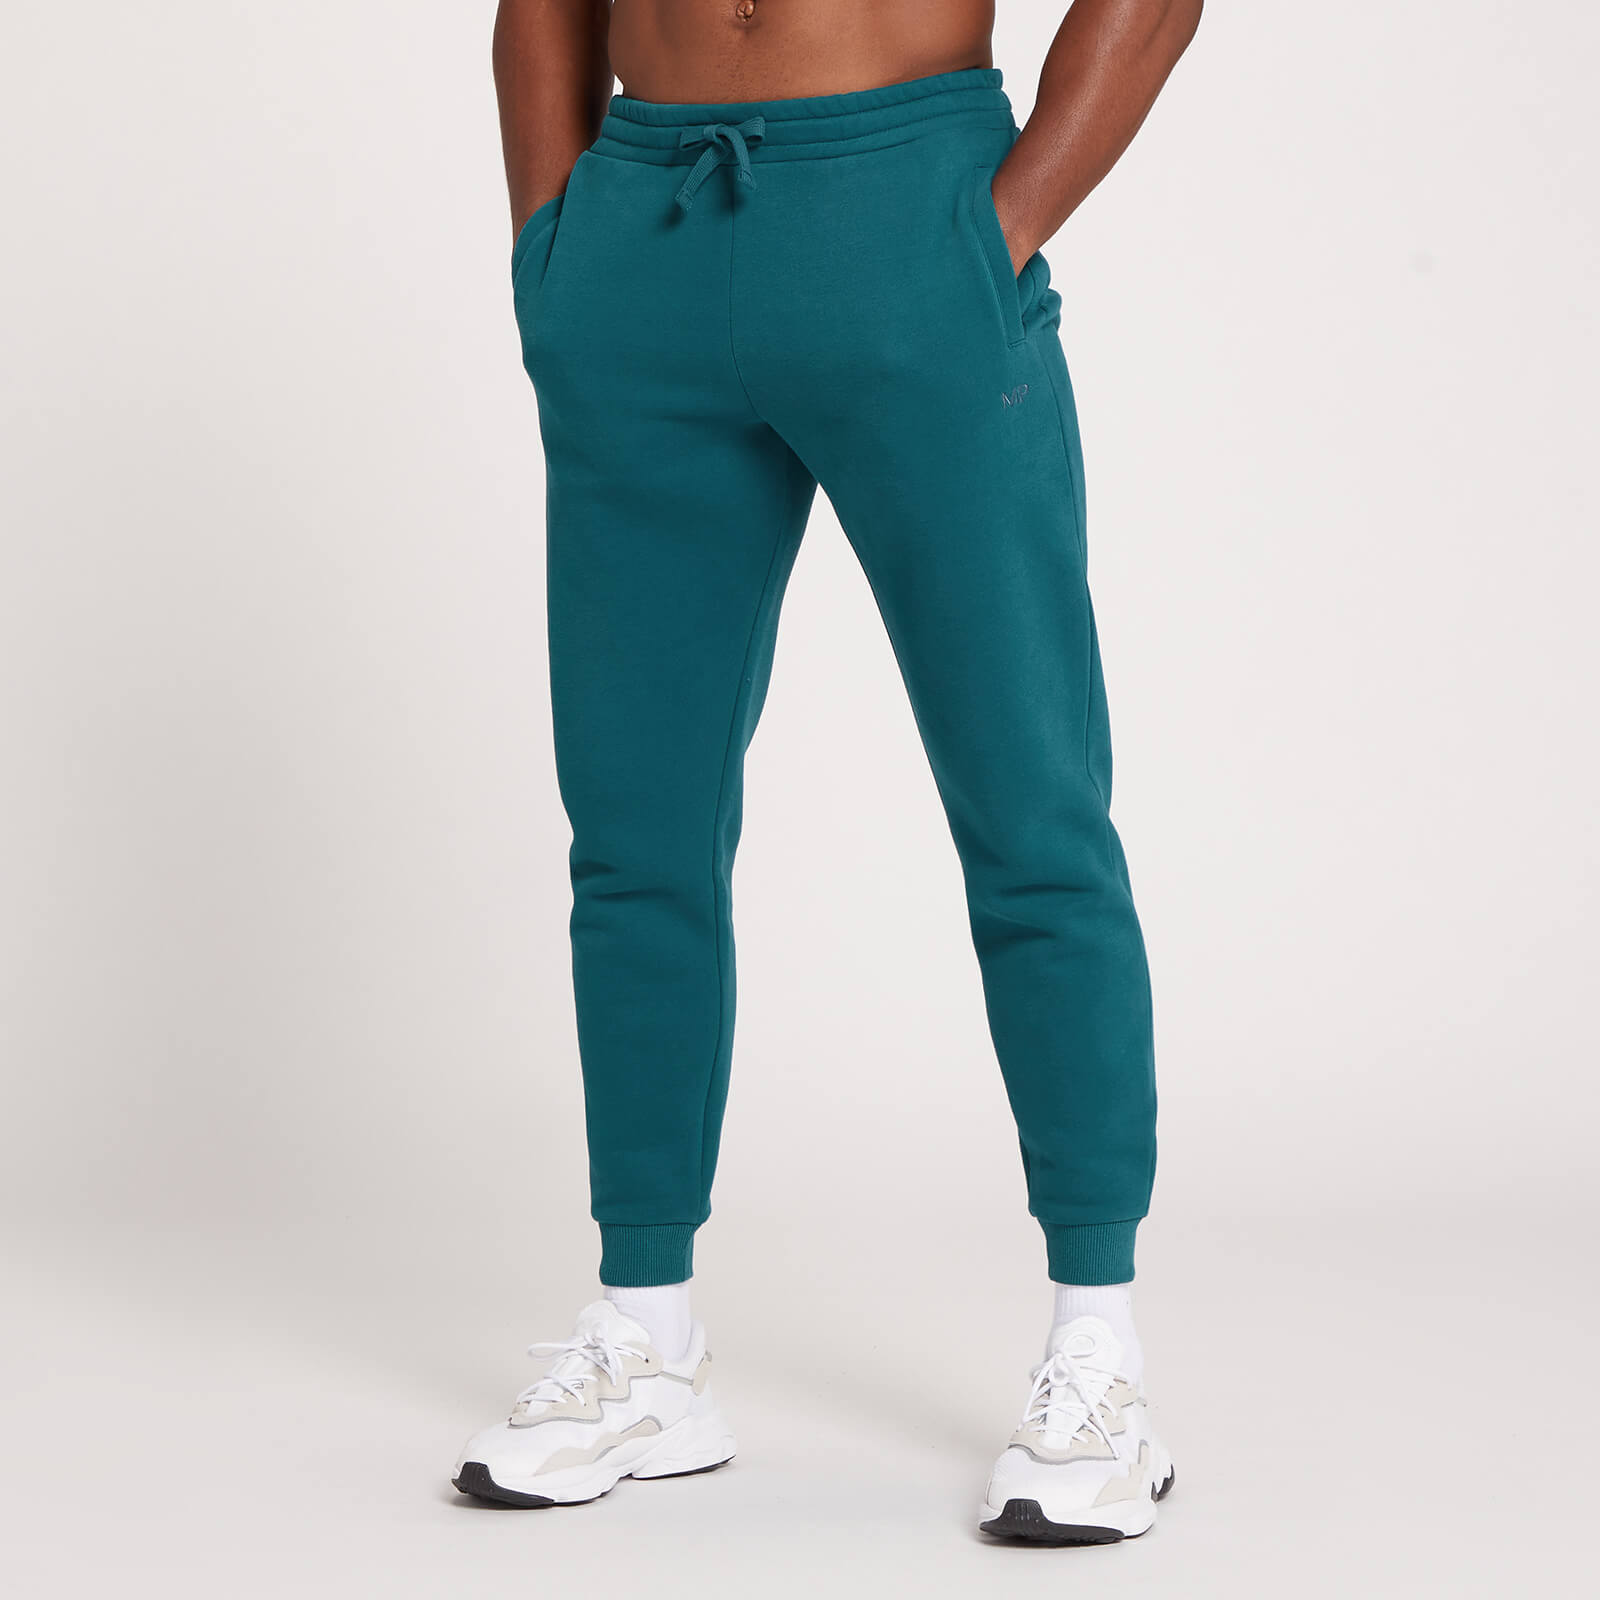 Pantalón deportivo con detalle gráfico de MP repetido para hombre de MP - Verde azulado oscuro - XS